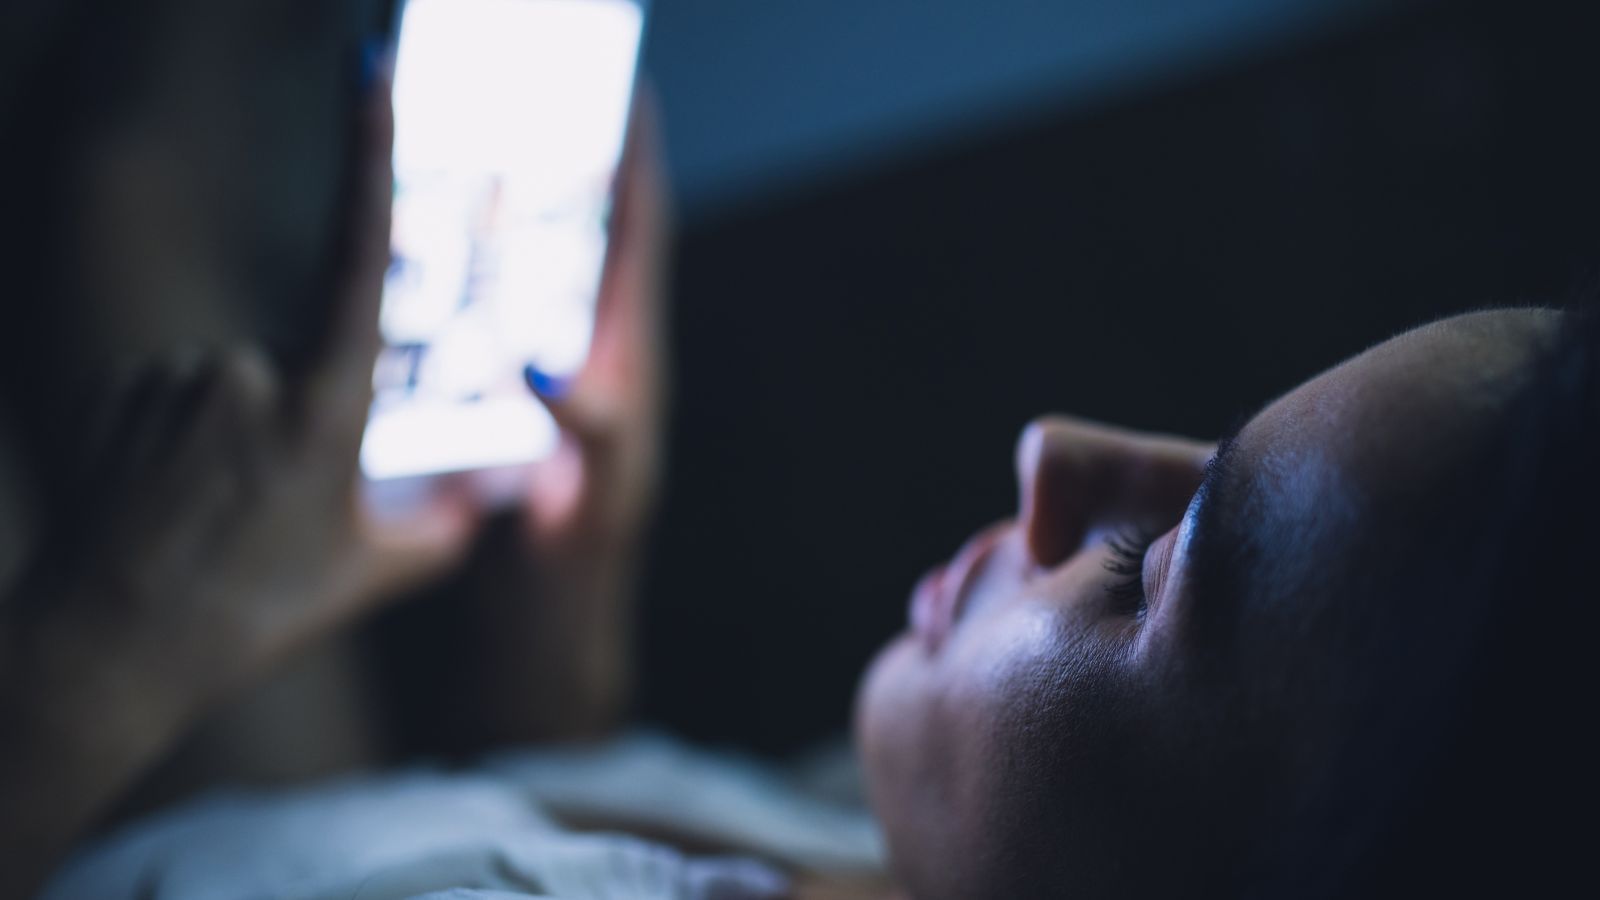 Smartphone in CARICA di notte, ERRORE assurdo compiuto da TUTTI gli utenti